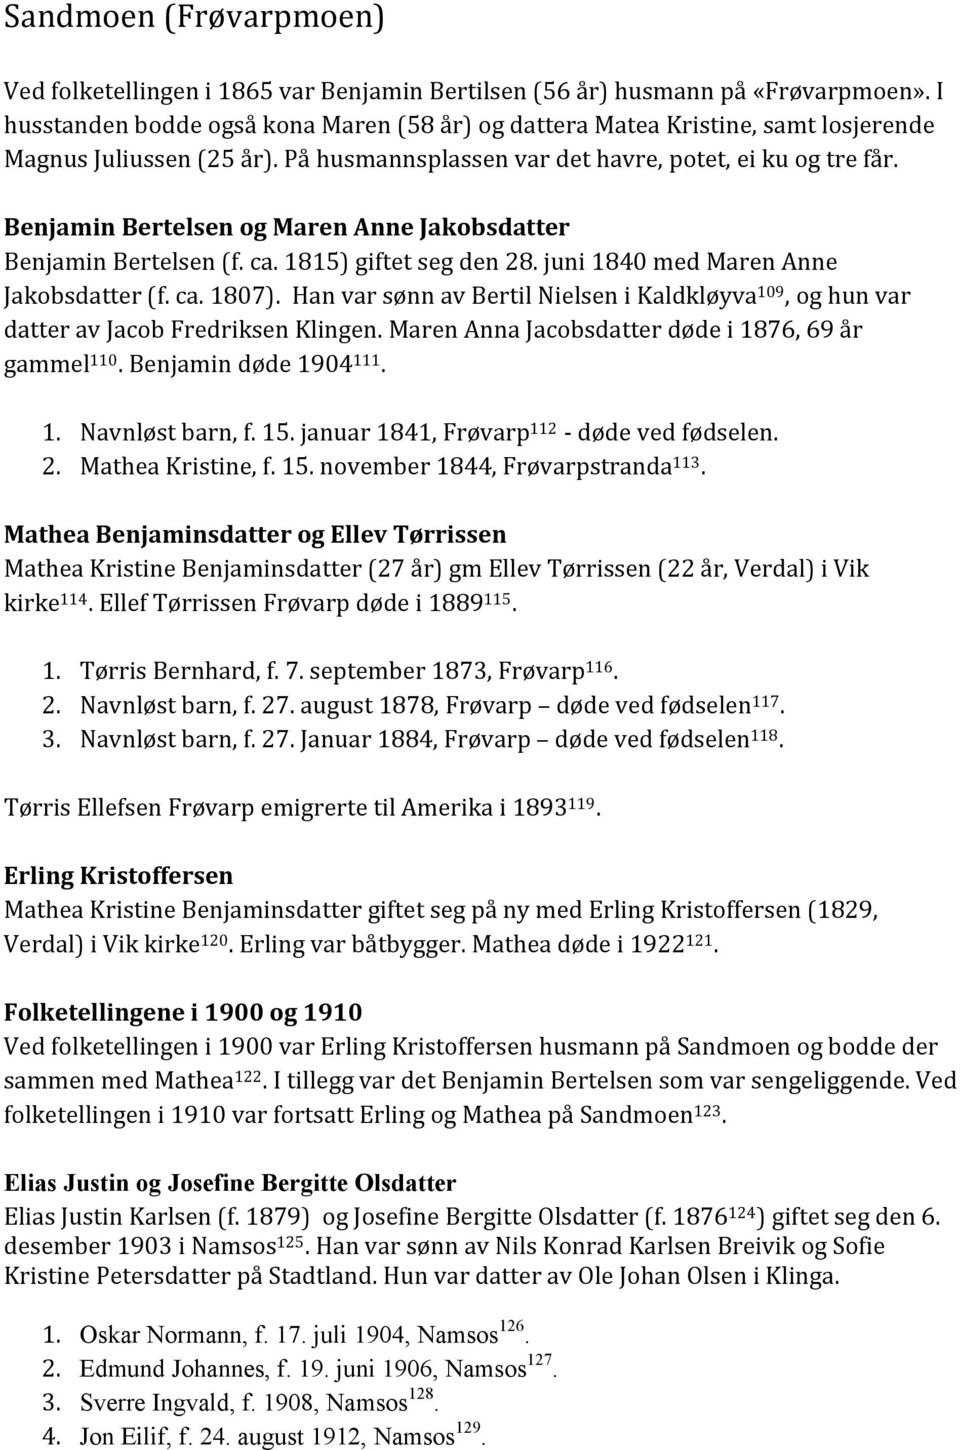 Benjamin Bertelsen og Maren Anne Jakobsdatter Benjamin Bertelsen (f. ca. 1815) giftet seg den 28. juni 1840 med Maren Anne Jakobsdatter (f. ca. 1807).